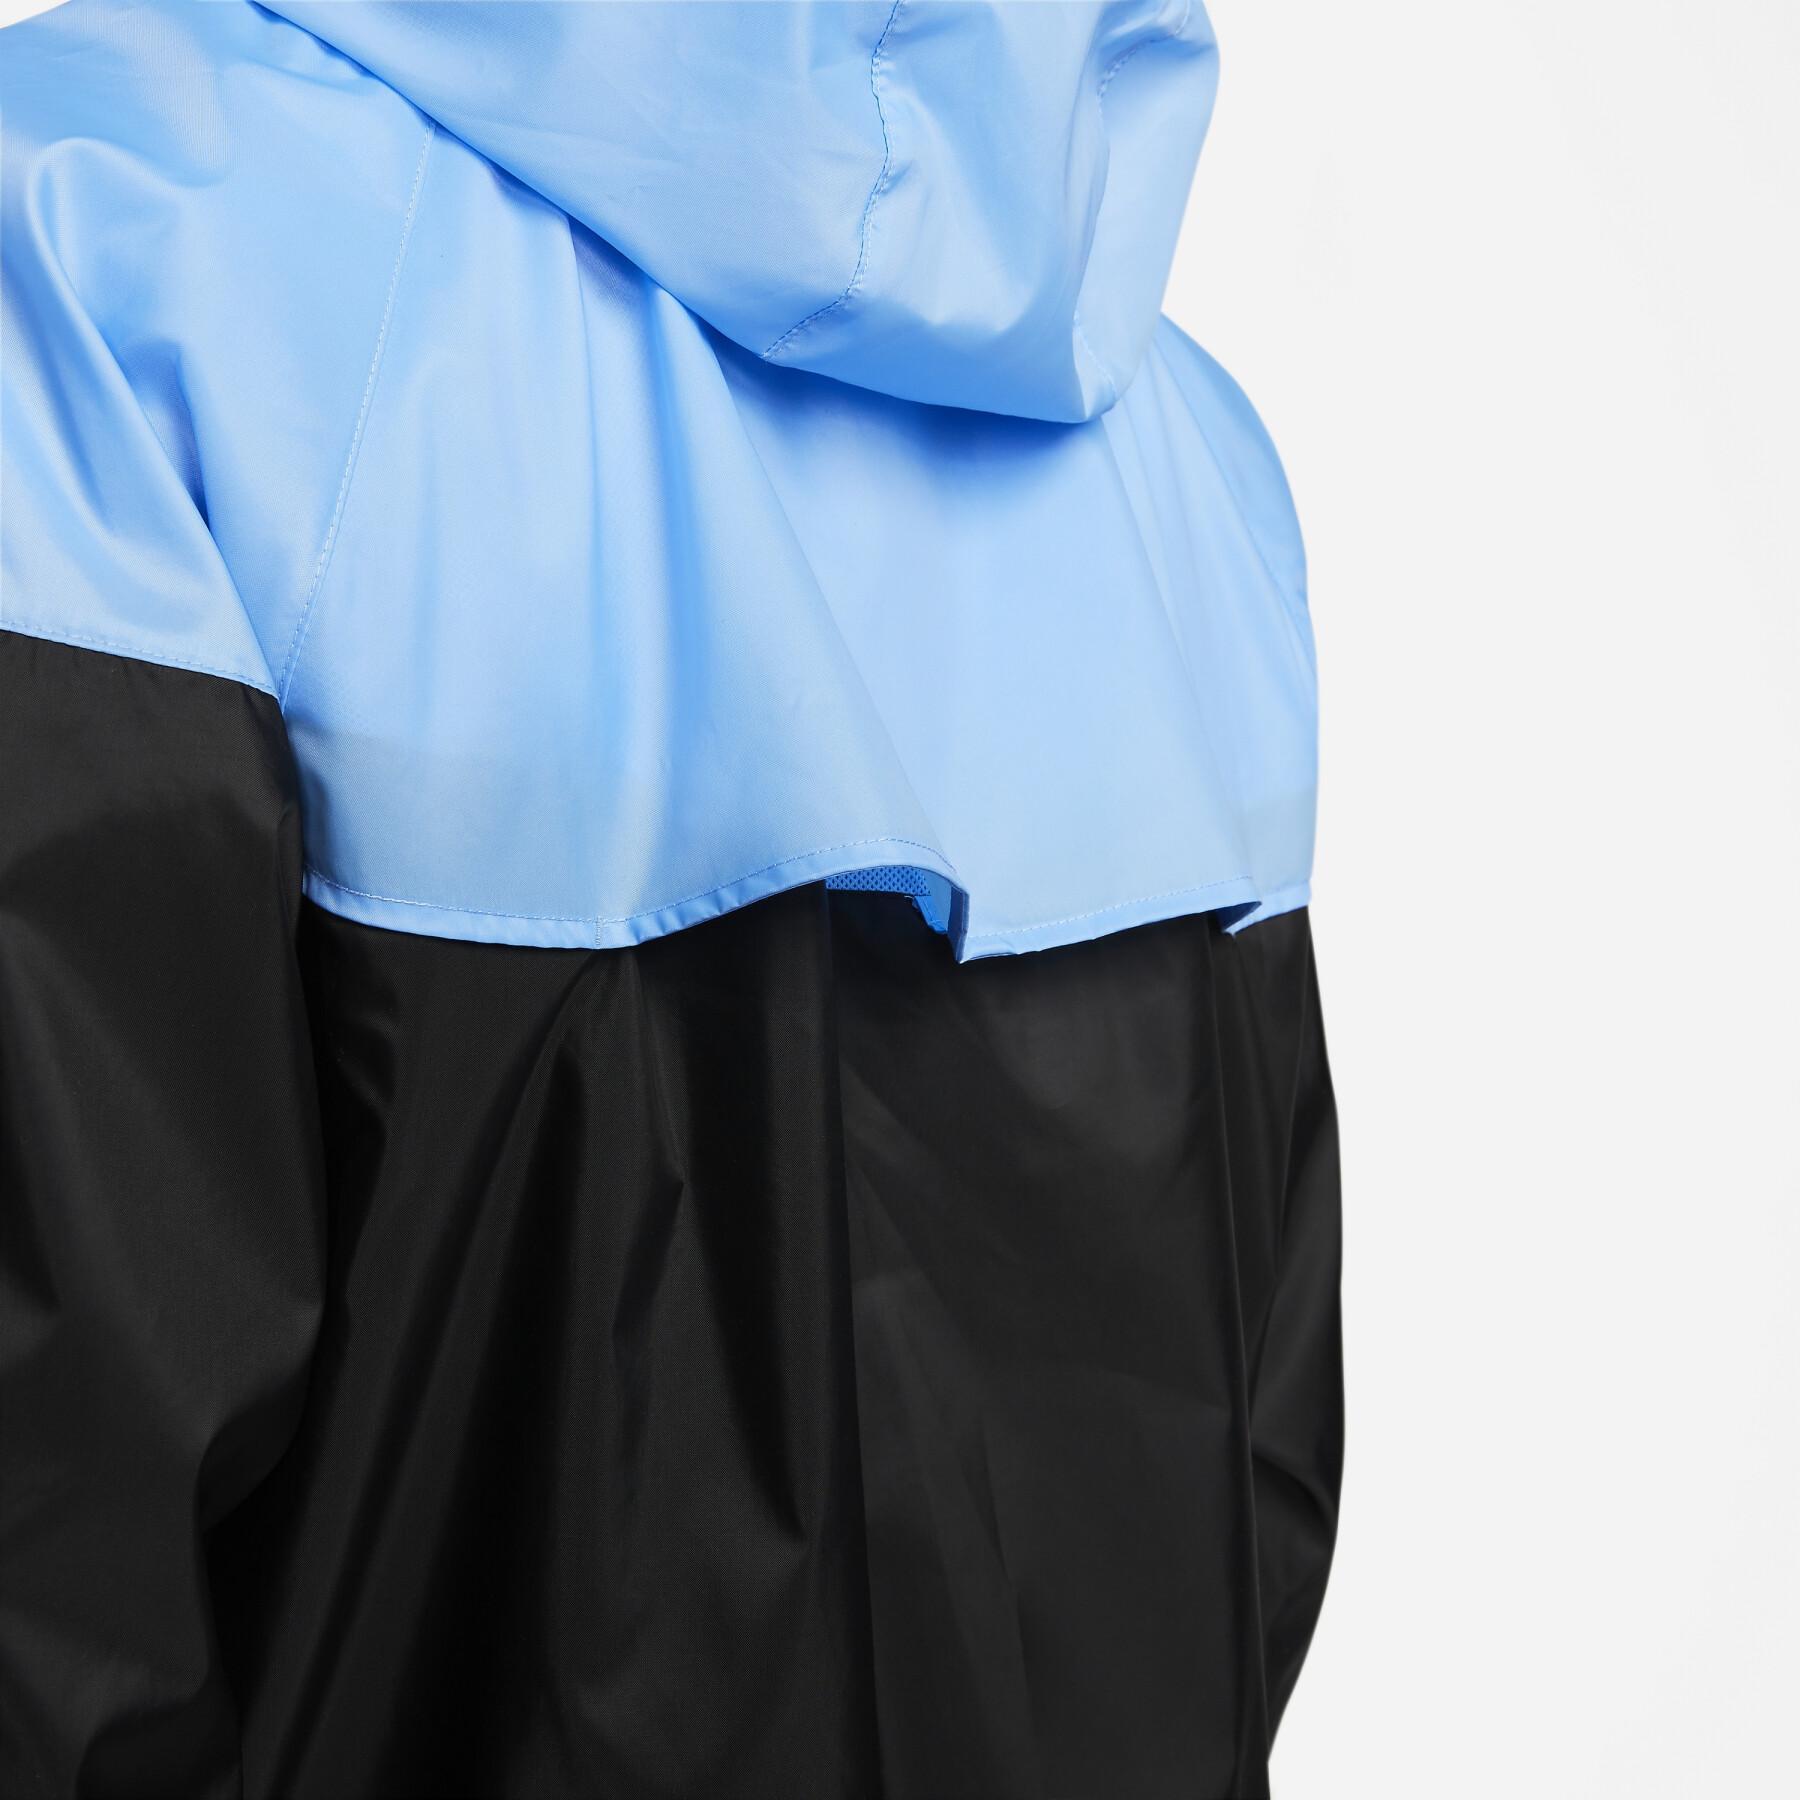 Waterproof jacket Nike Heritage Essentials